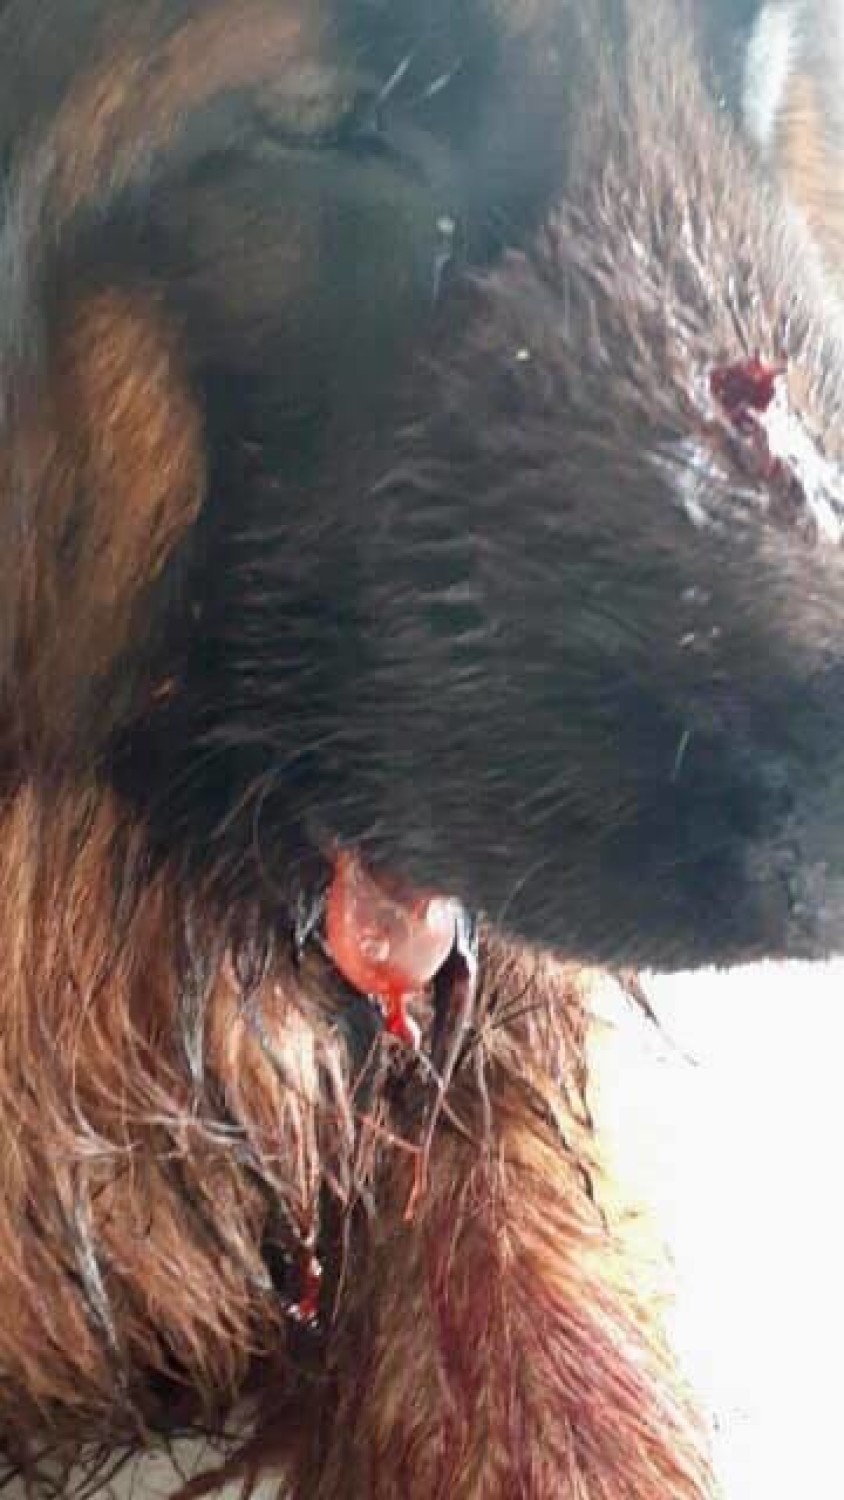 Dolny Śląsk: Policjanci zastrzelili psa podczas interwencji. Obrońcy zwierząt: bestie, nie stróże prawa. Policja: Broniliśmy się